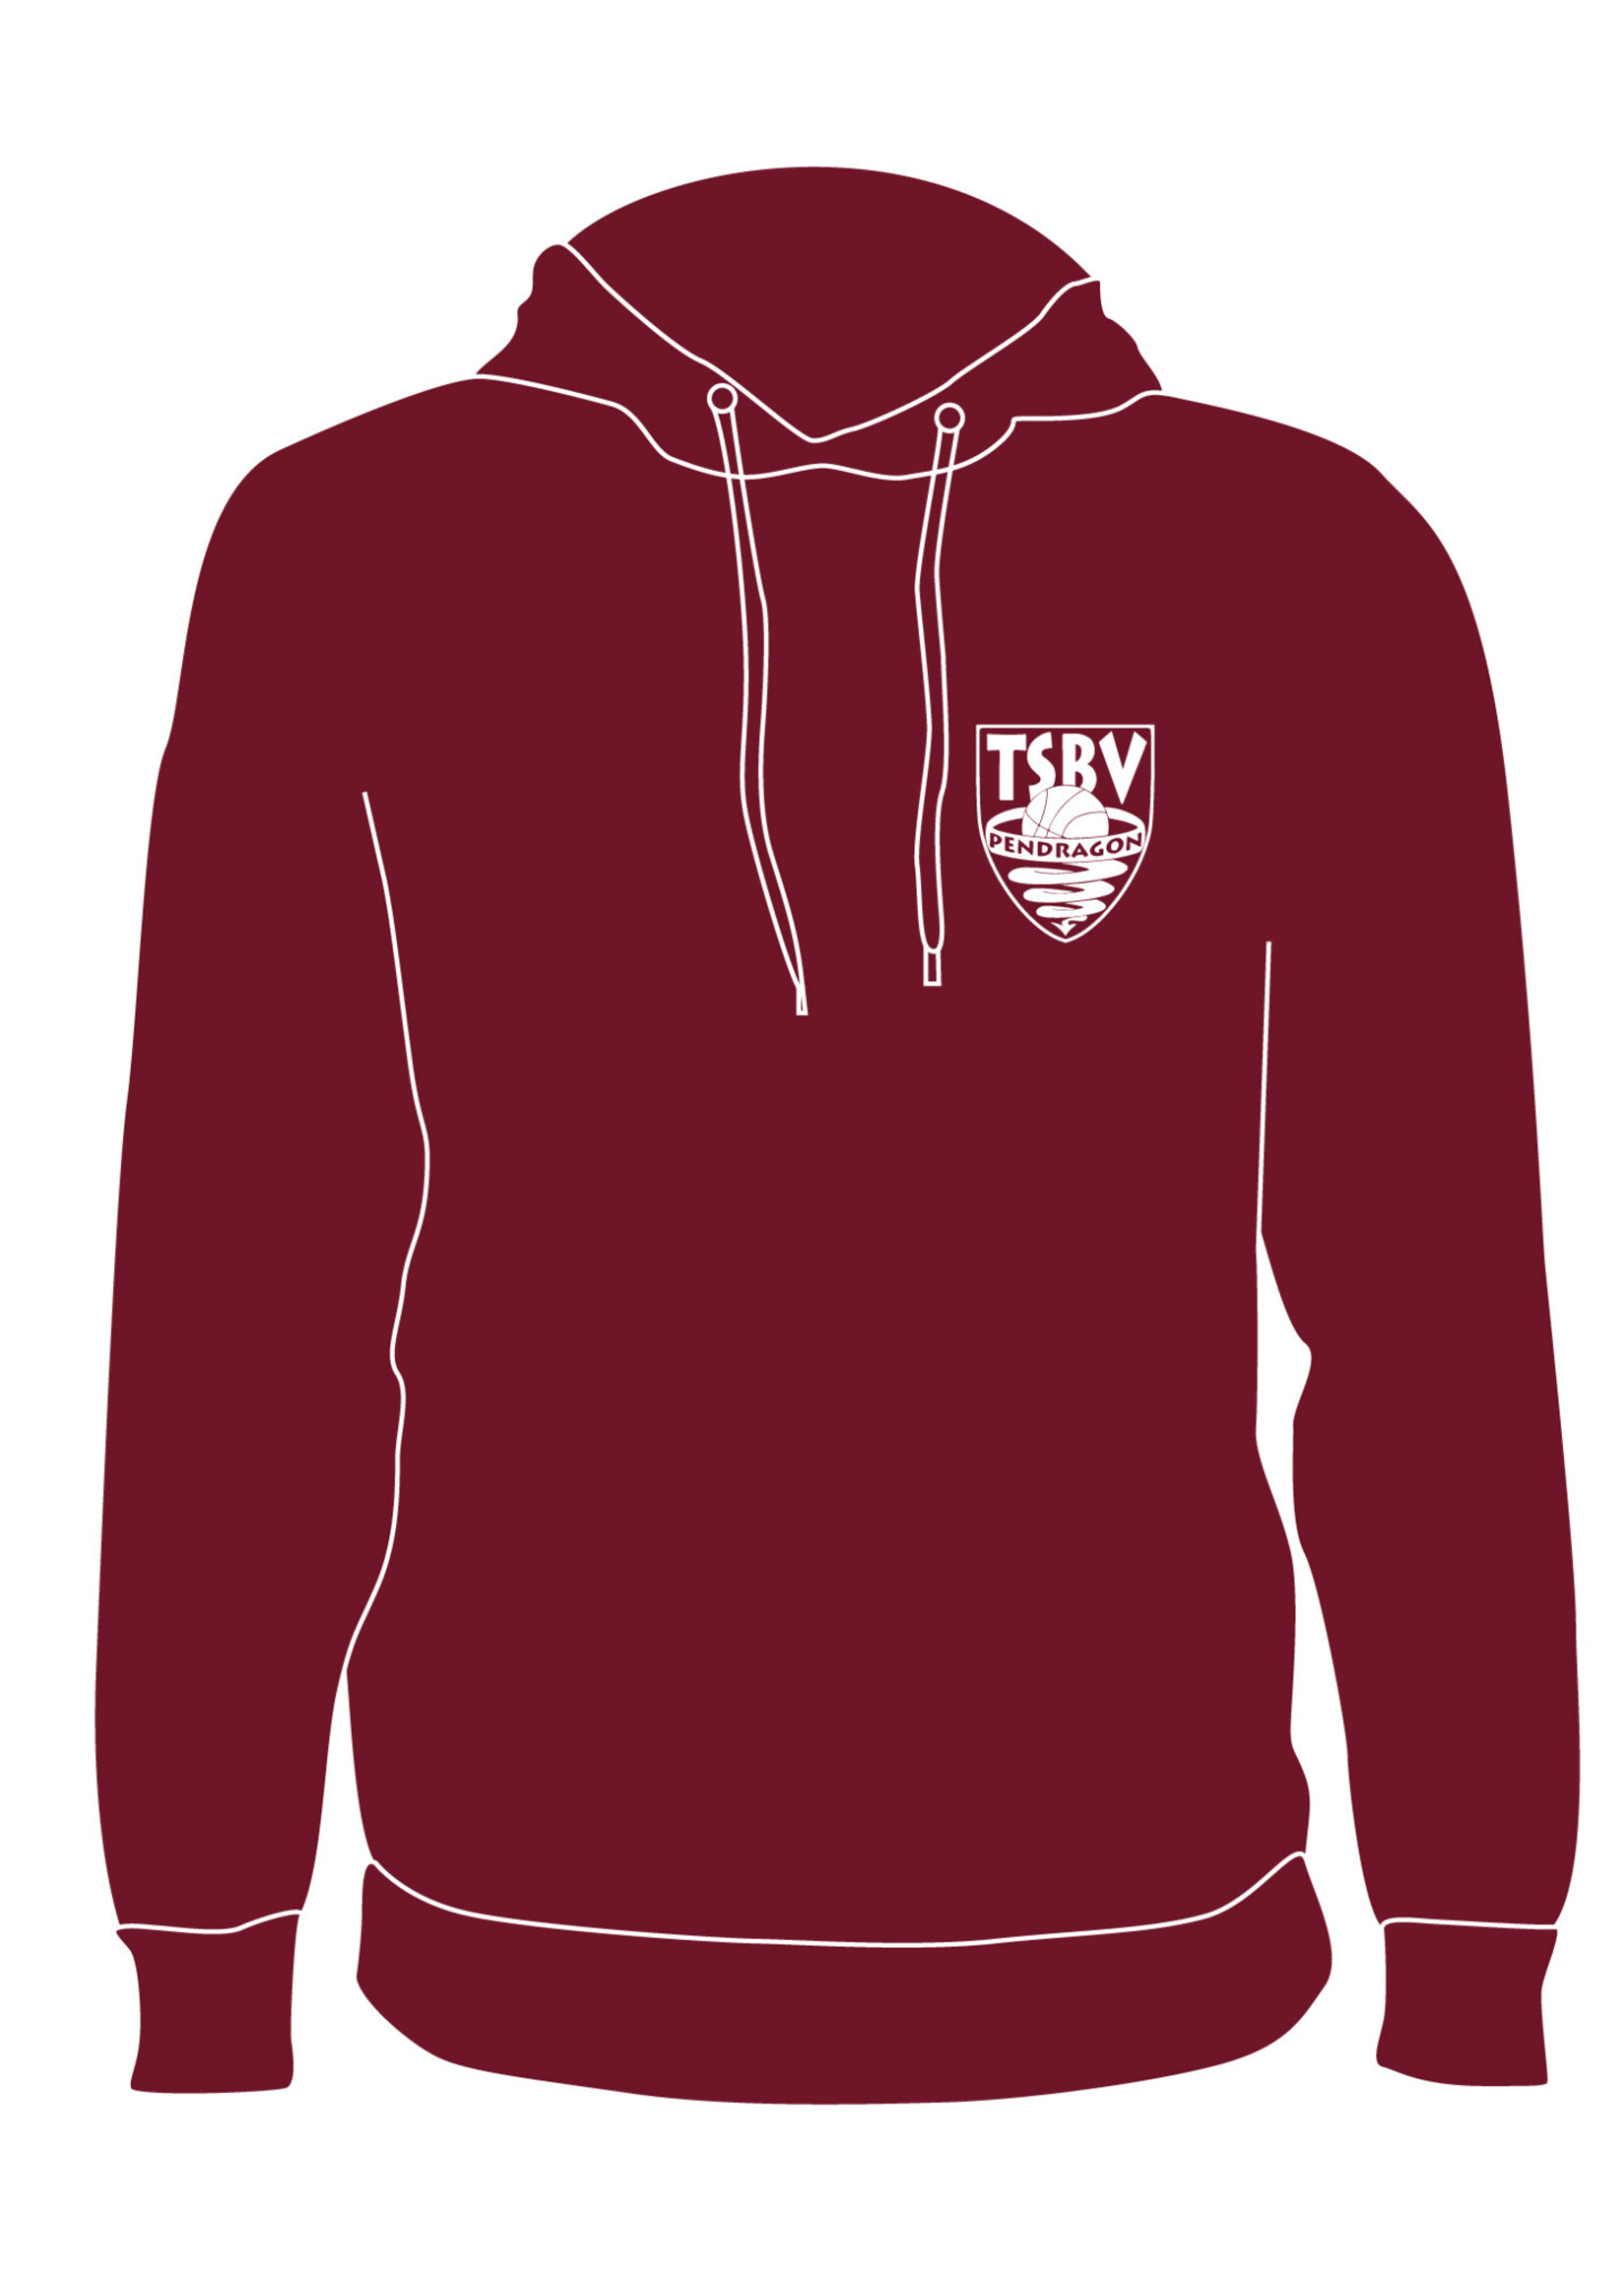 Burned Teamwear T.S.B.V. Pendragon Hoodie Logo Klein ordeaux